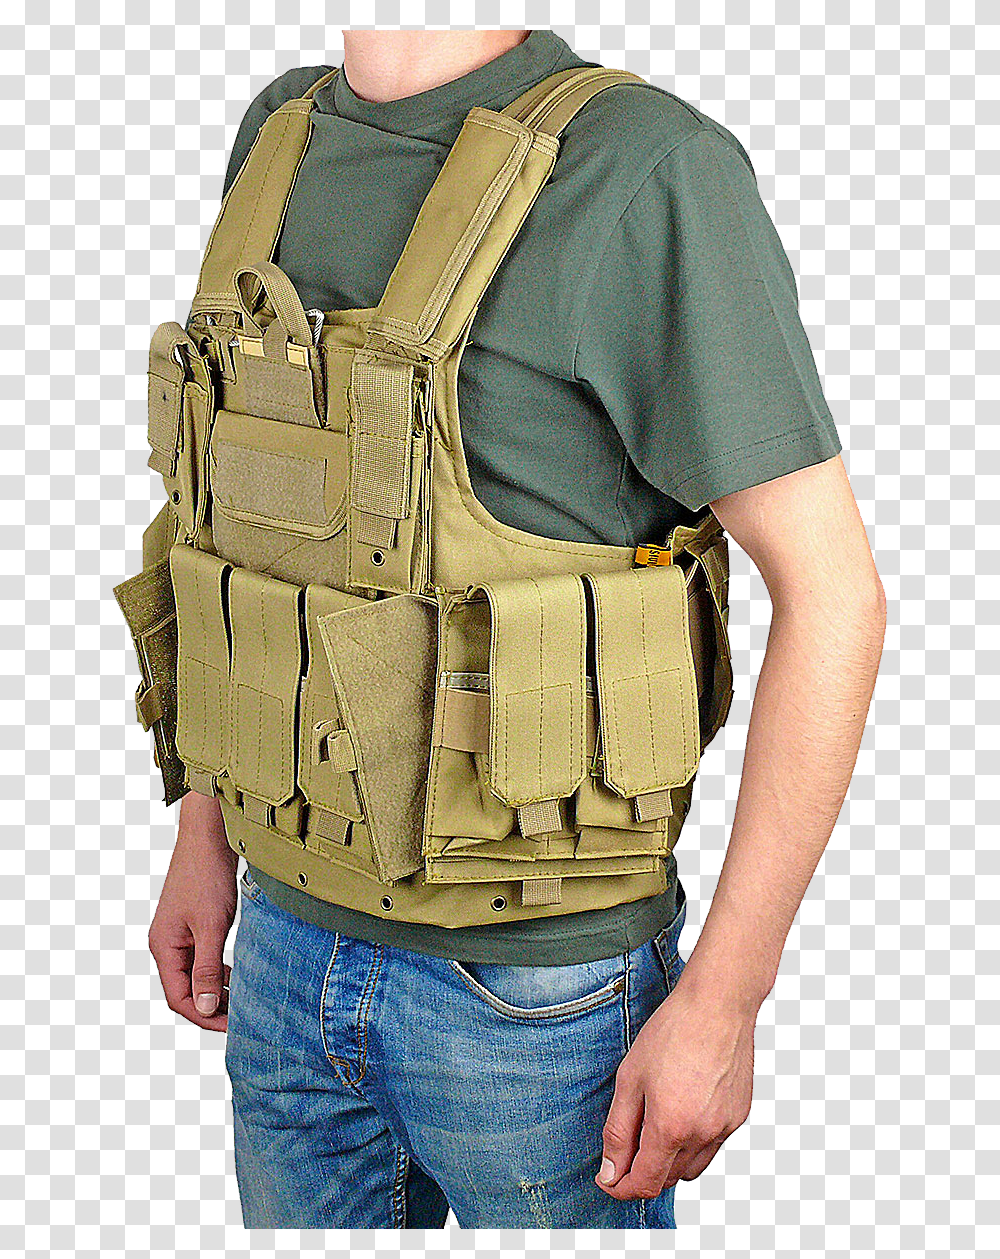 Bulletproof Vest, Weapon, Pants, Lifejacket Transparent Png